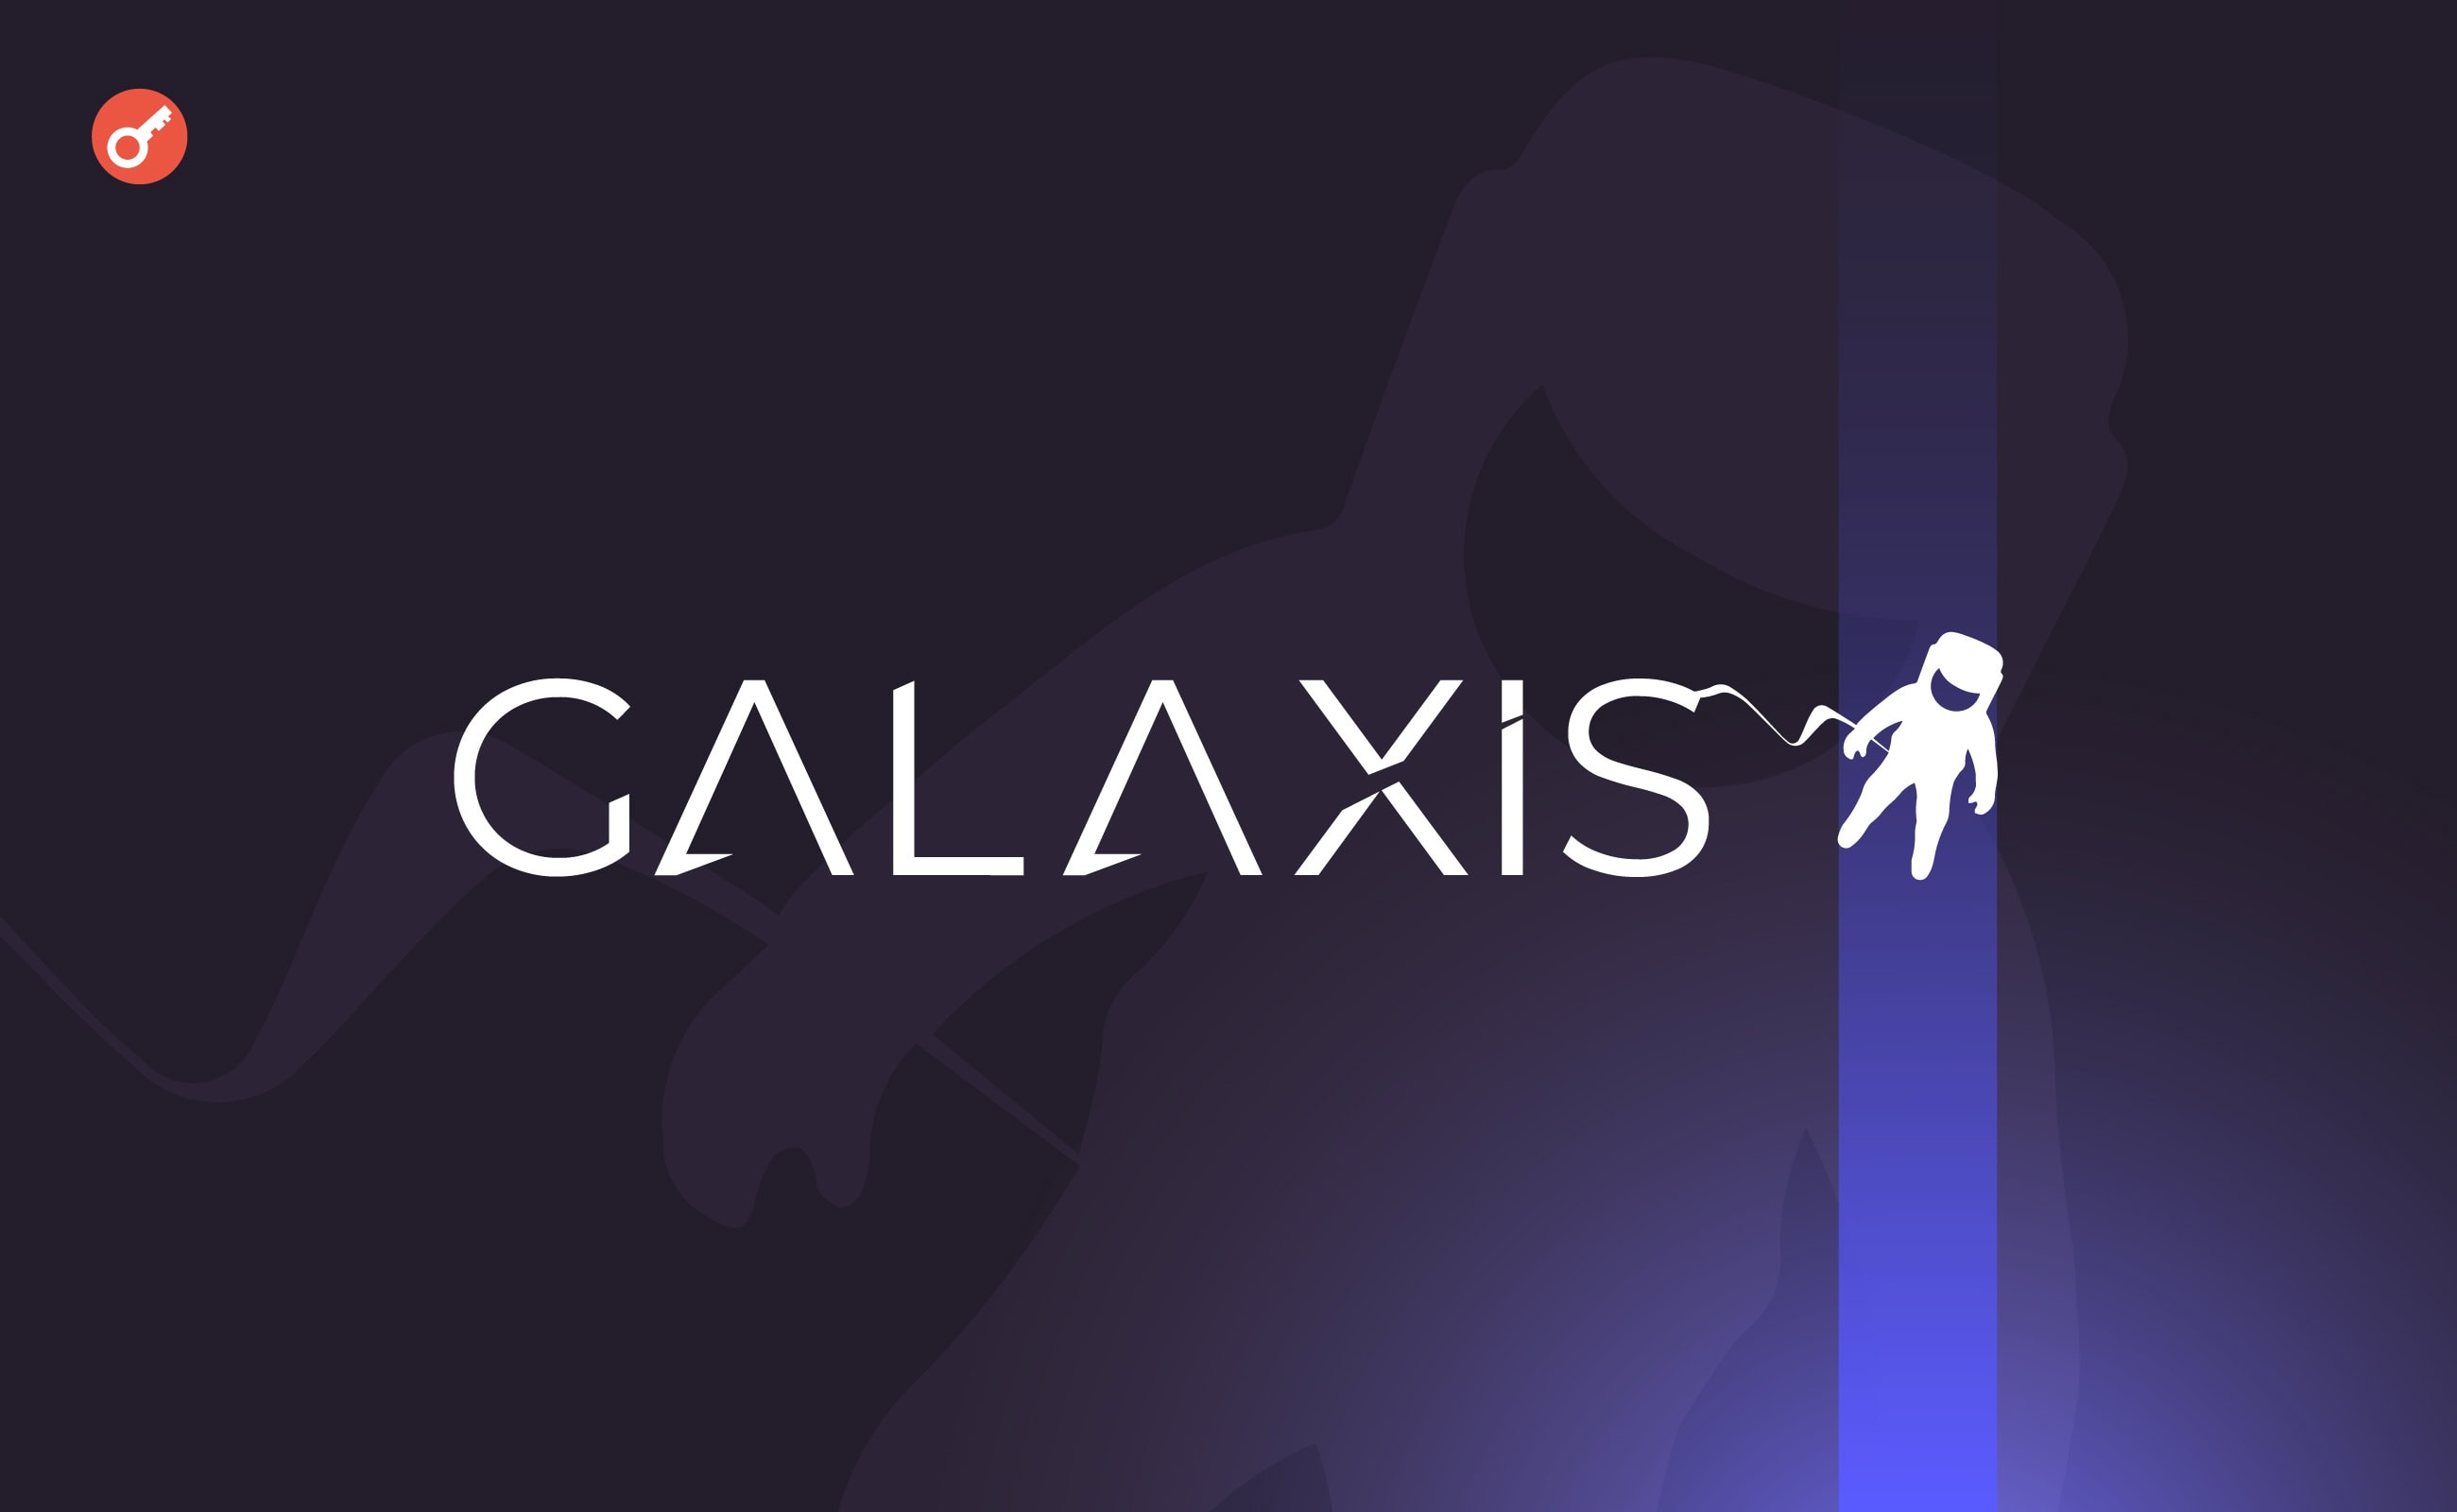 Web3-платформа Galaxis залучила $10 млн перед запуском токена. Головний колаж новини.